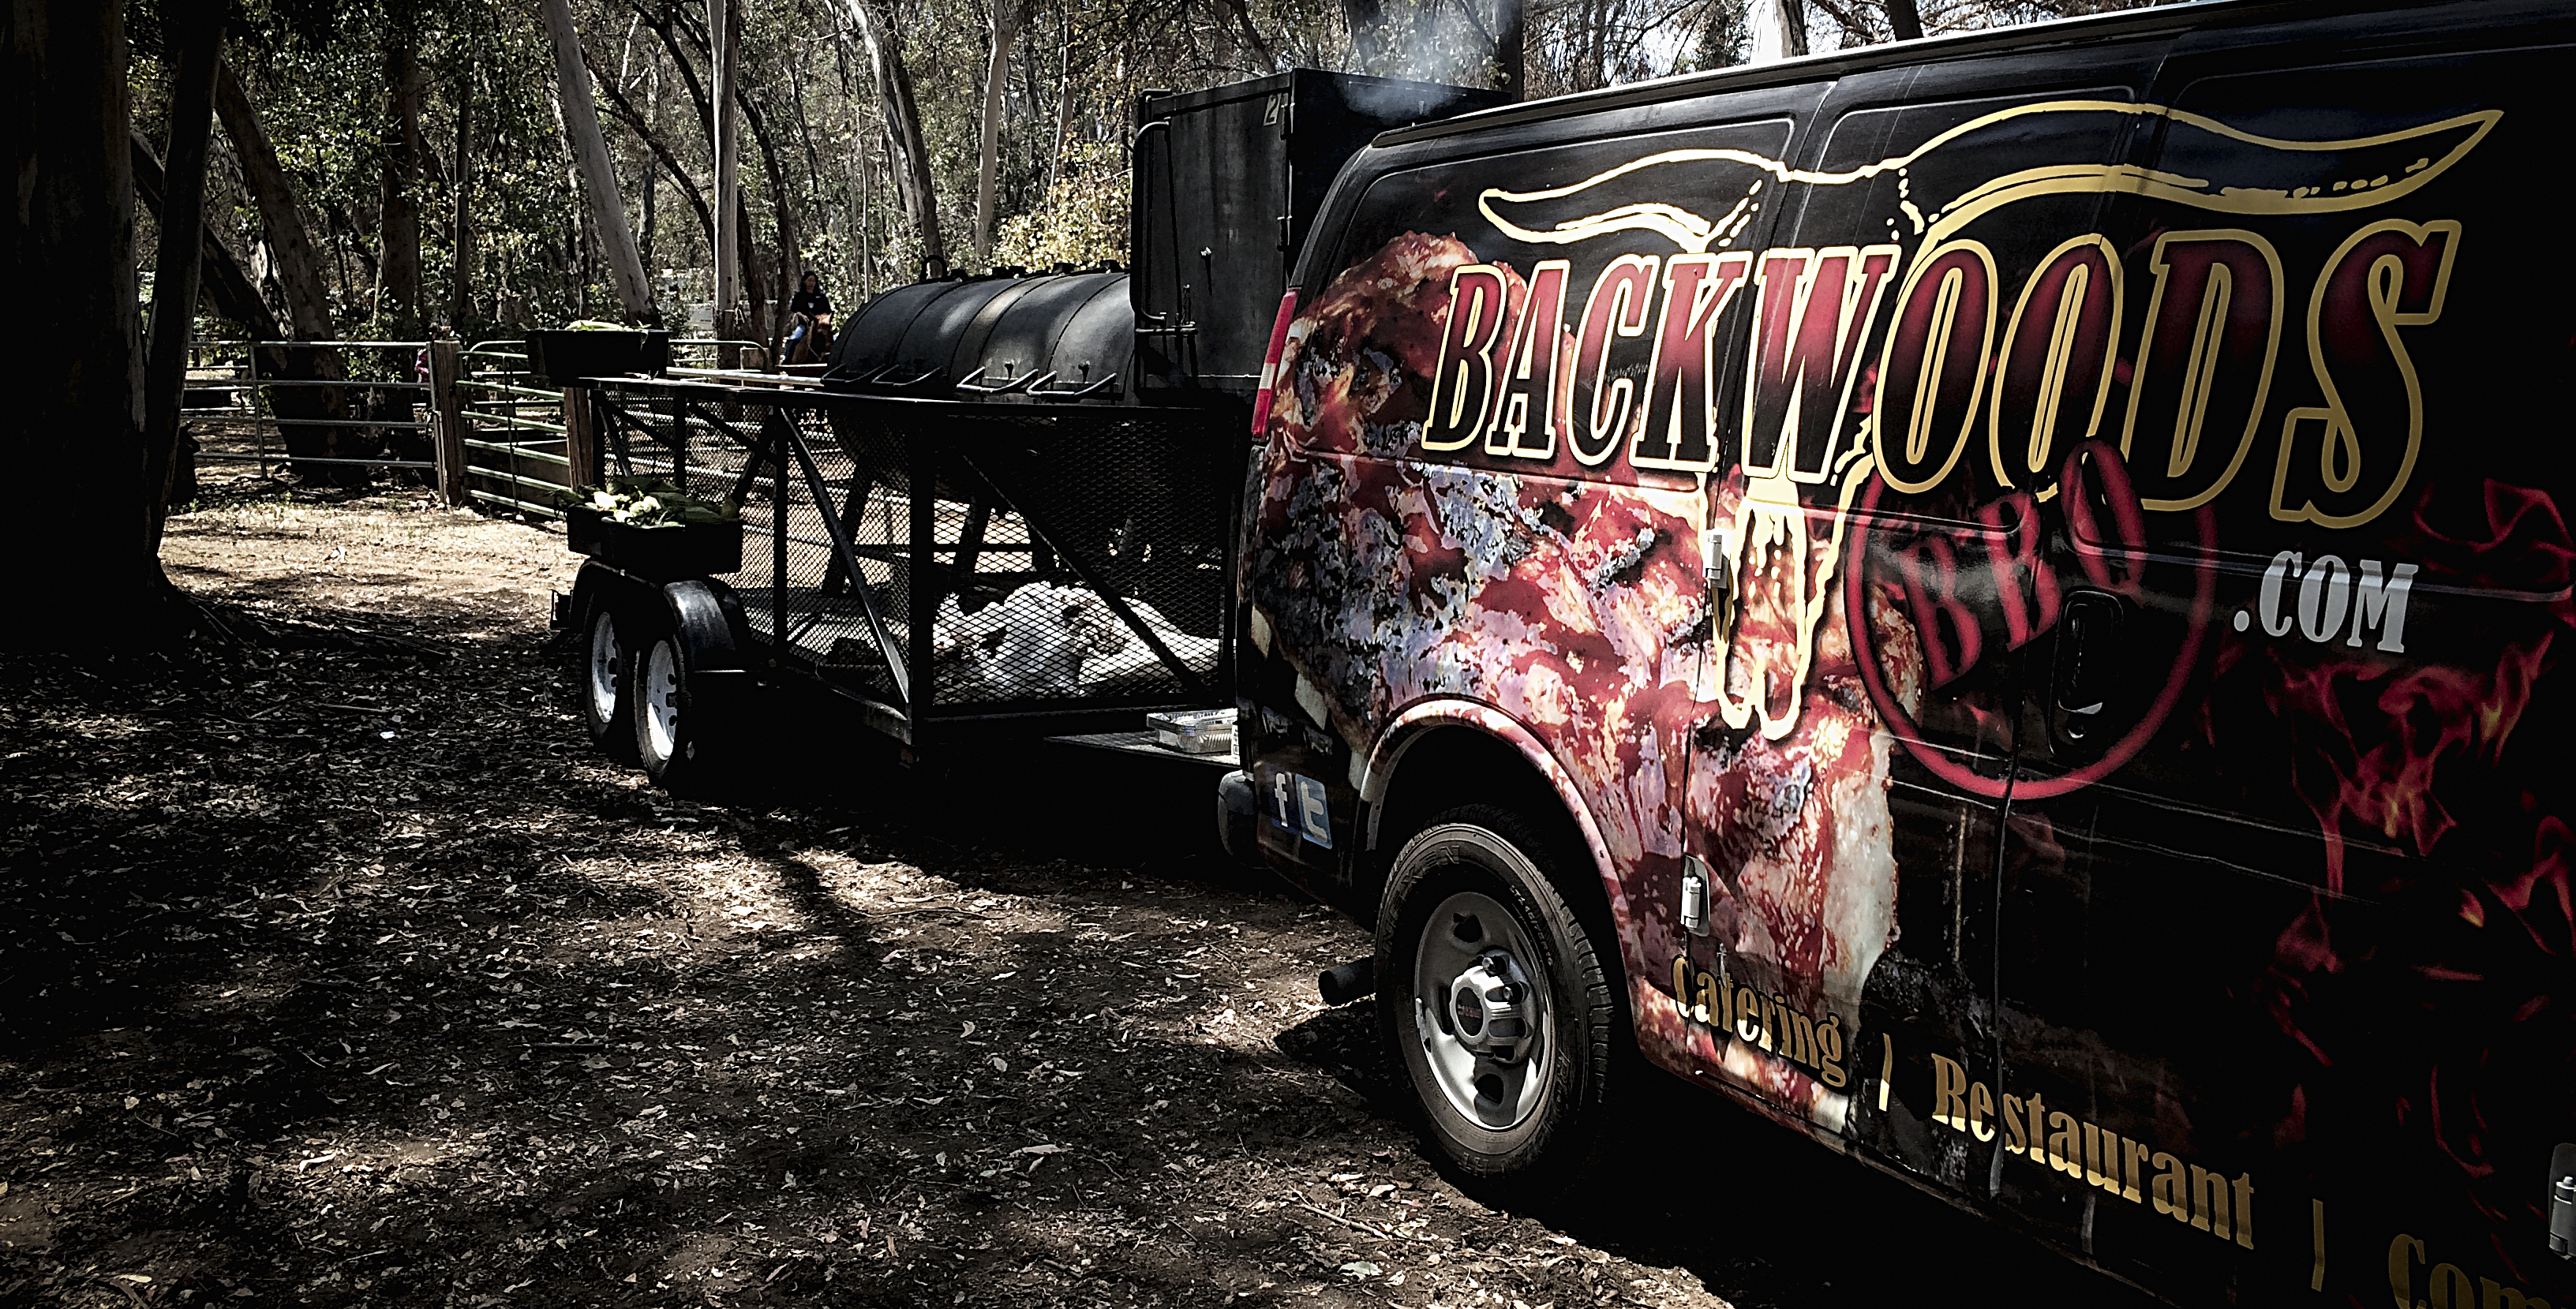 Backwoods BBQ Catering Van